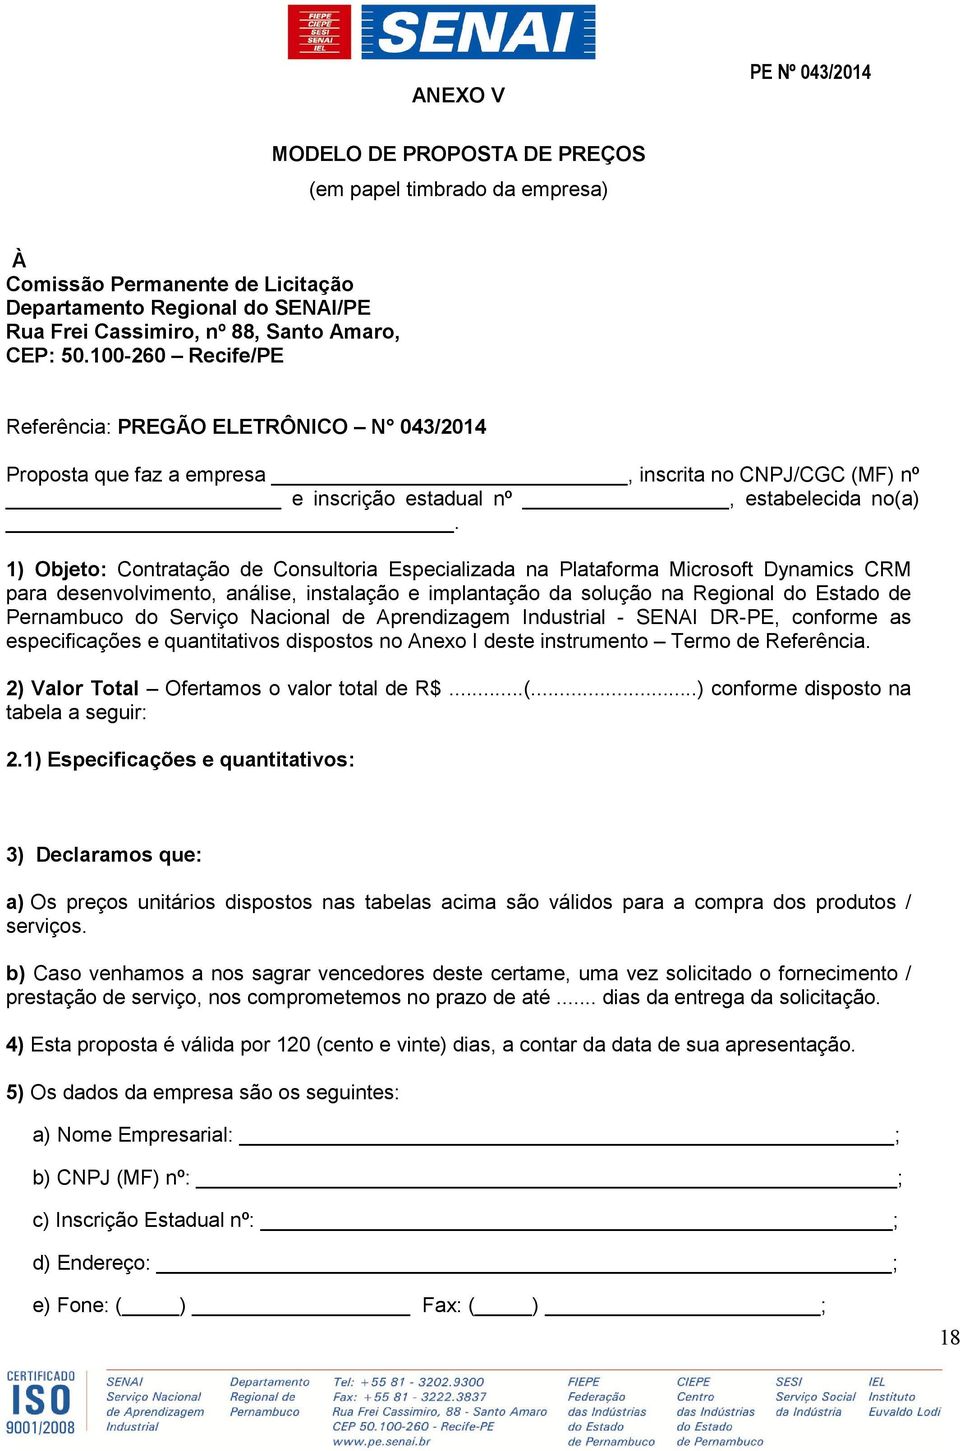 1) Objeto: Contratação de Consultoria Especializada na Plataforma Microsoft Dynamics CRM para desenvolvimento, análise, instalação e implantação da solução na Regional do Estado de Pernambuco do